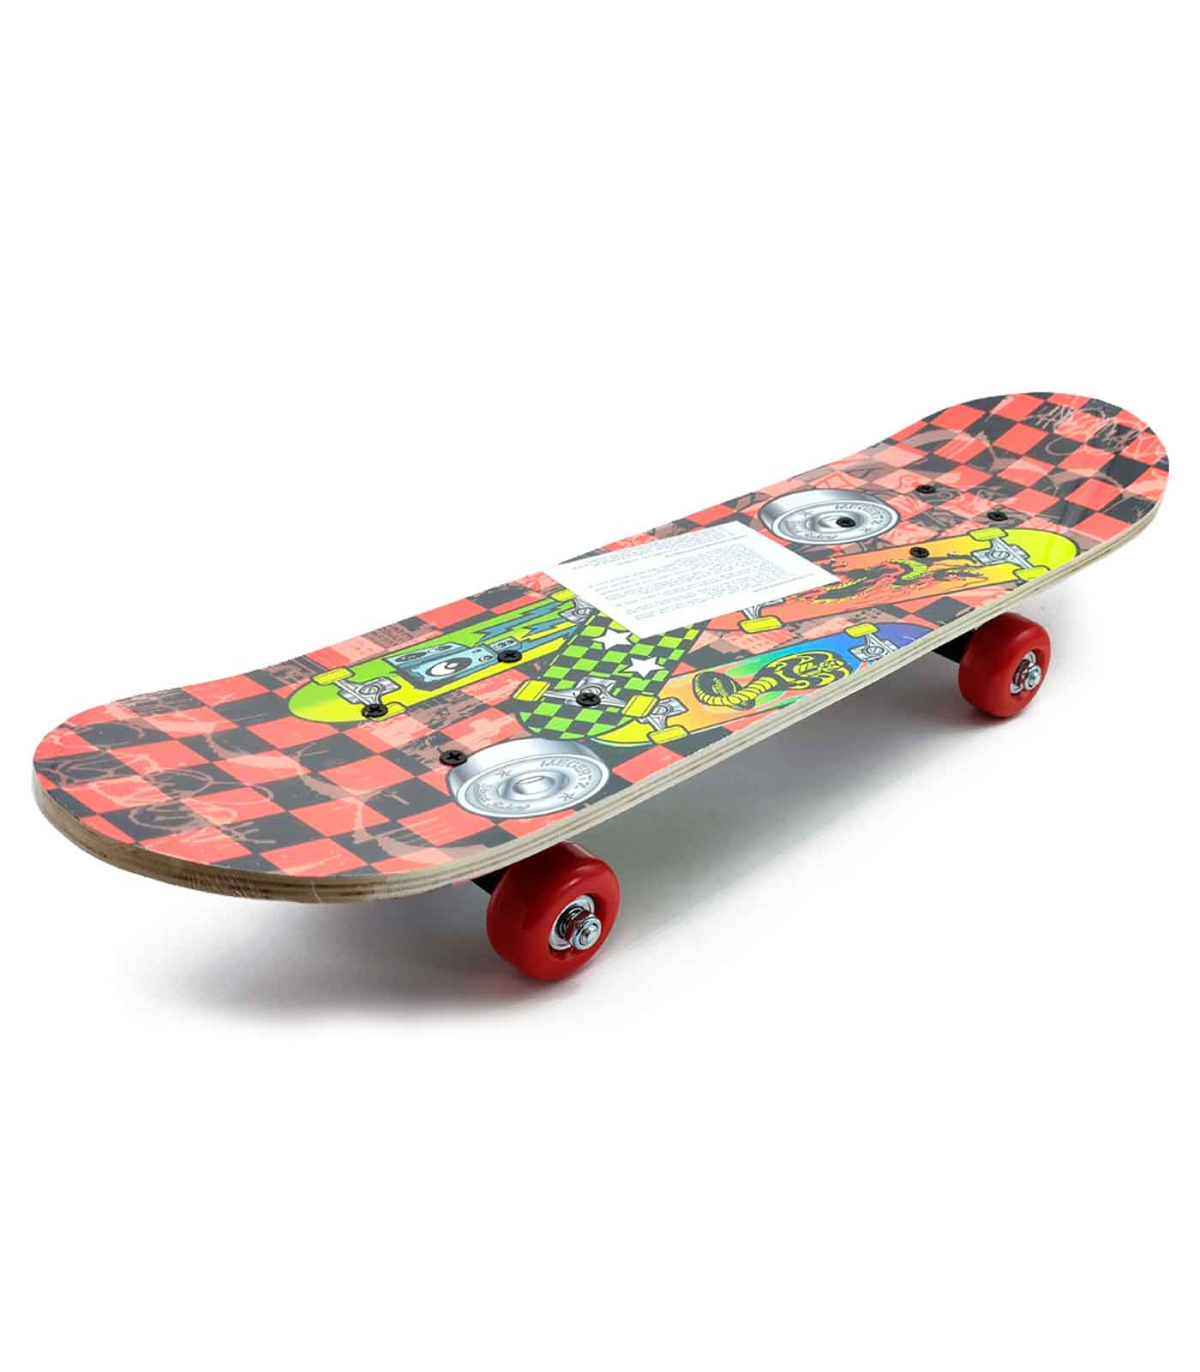 Tradineur - Skateboard para niños y jóvenes - Fabricado en madera